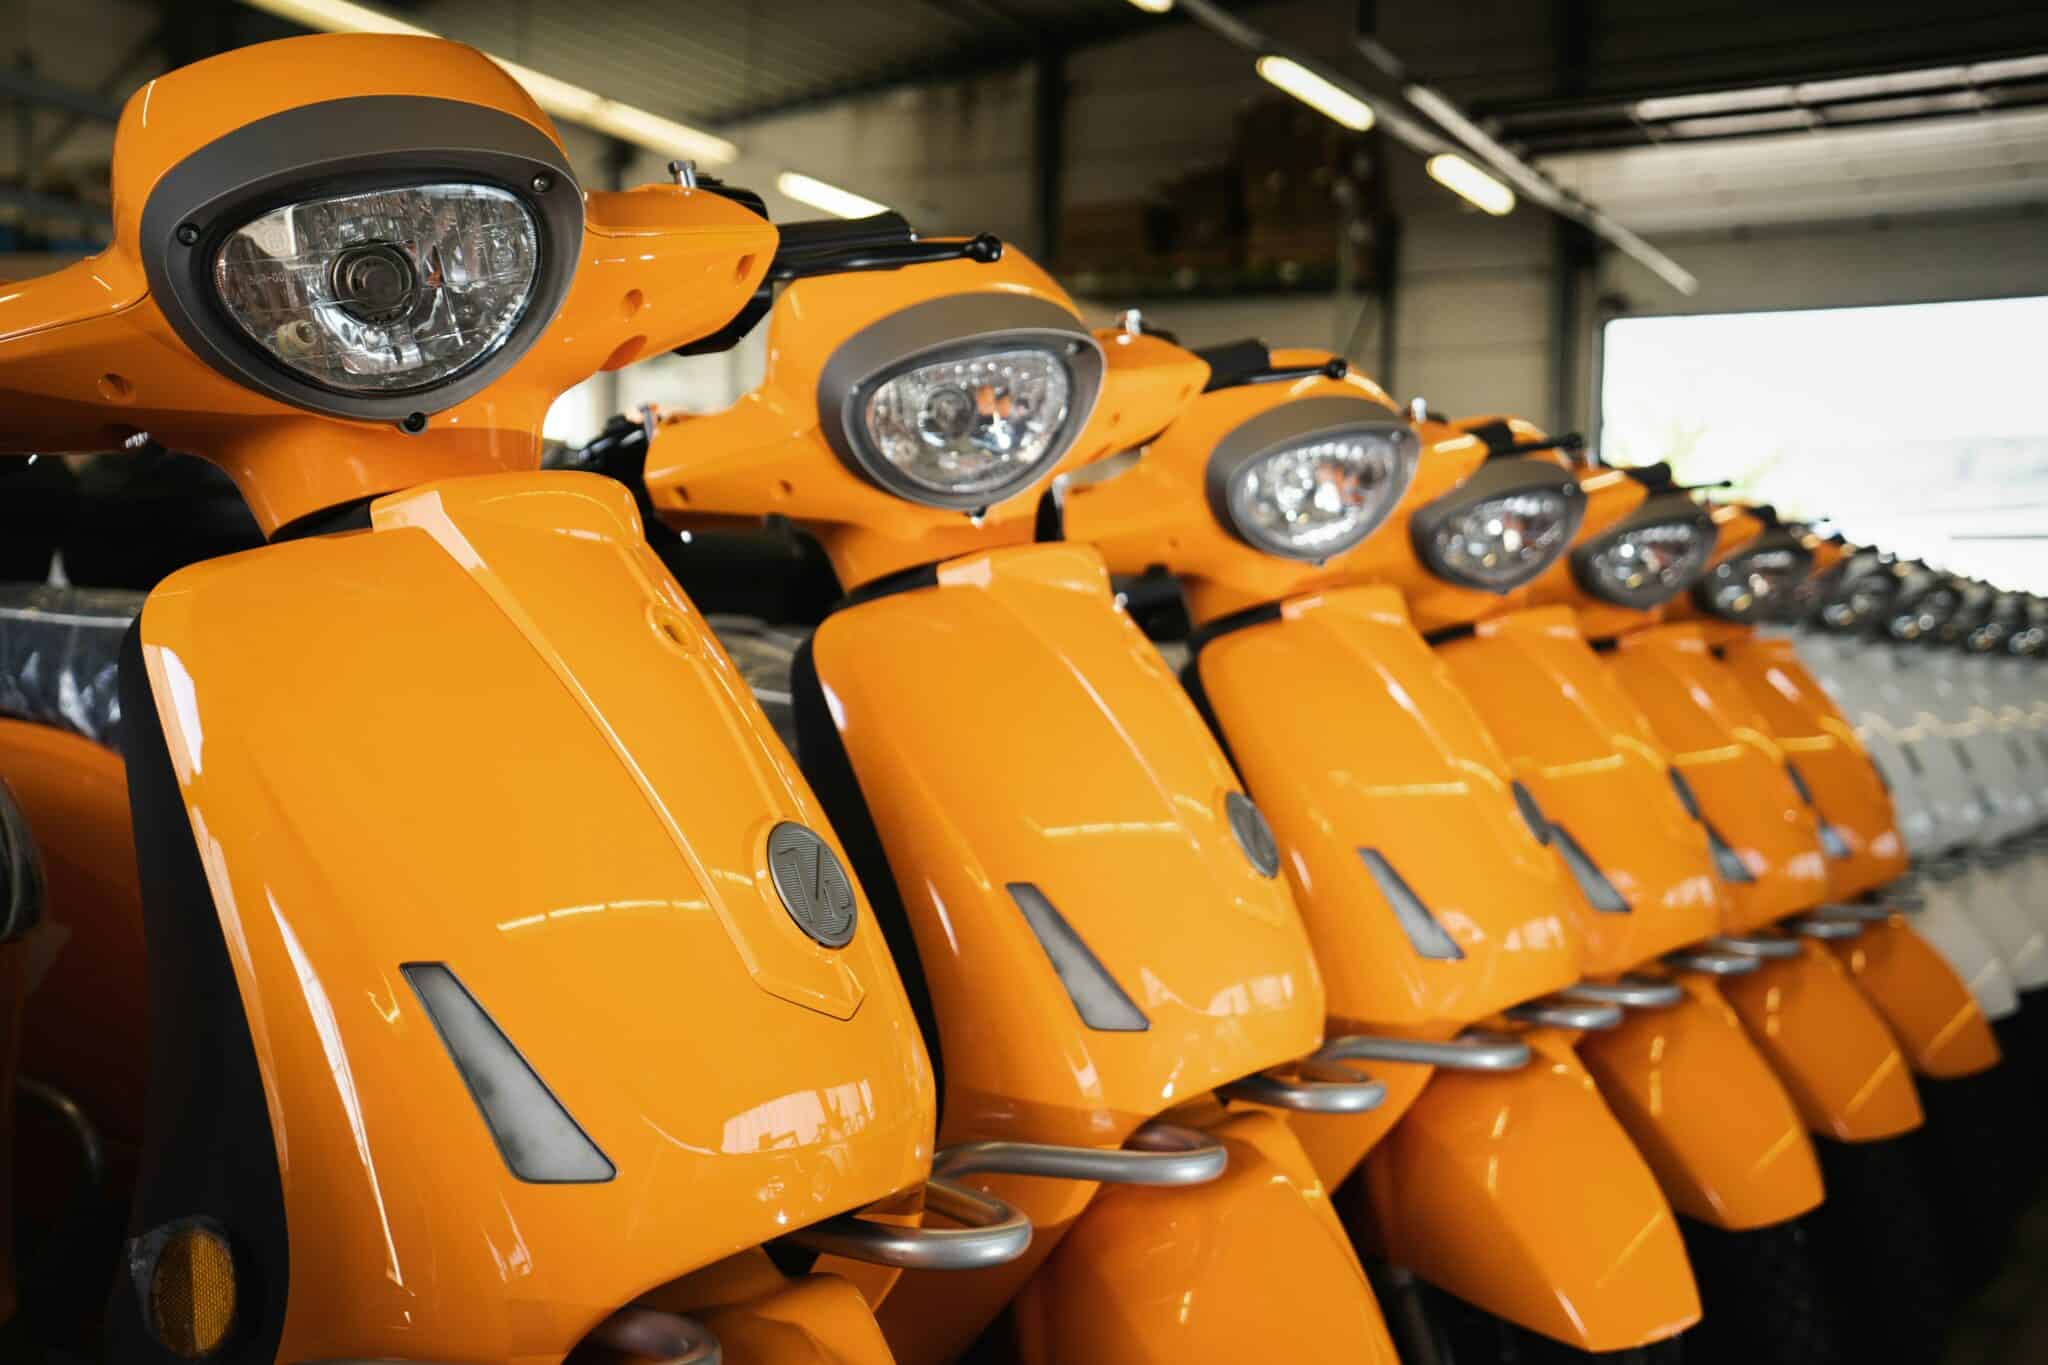 découvrez une large sélection de motos électriques performantes et écologiques pour une conduite moderne et responsable. profitez de l'innovation et de la liberté avec une moto électrique.